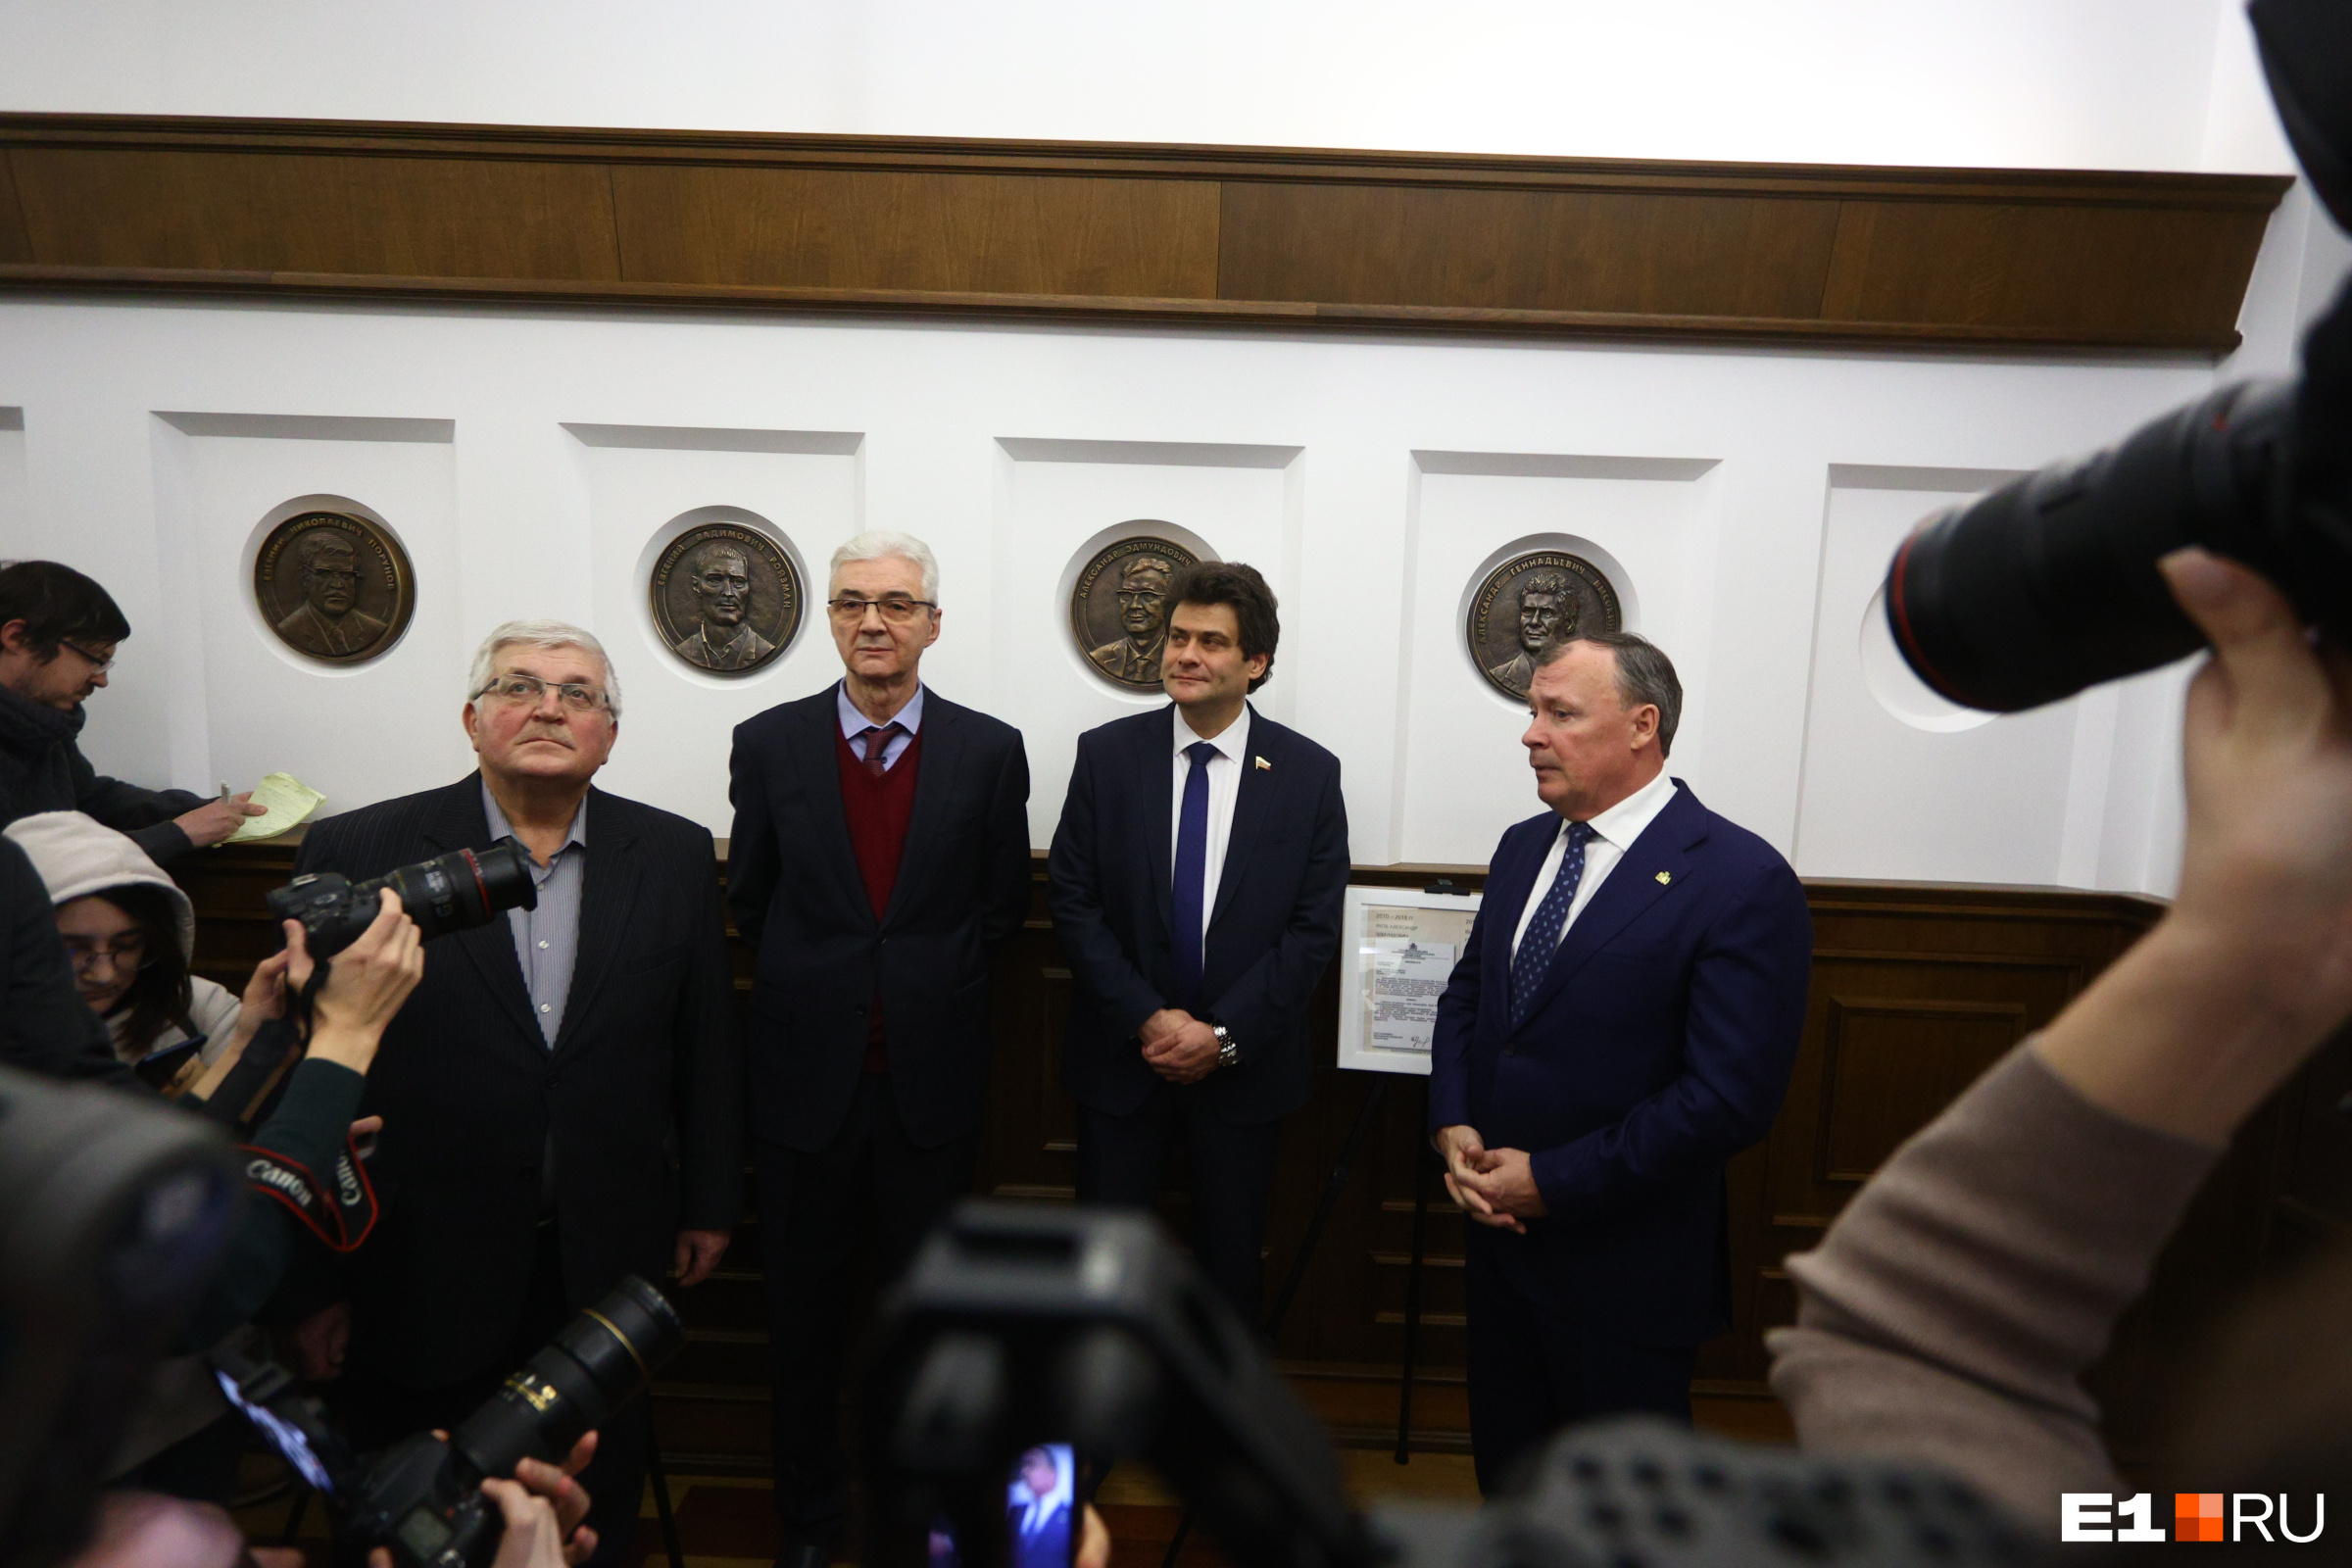 Теперь полная коллекция: в «сером доме» в галерею мэров добавили портреты Ройзмана* и Высокинского